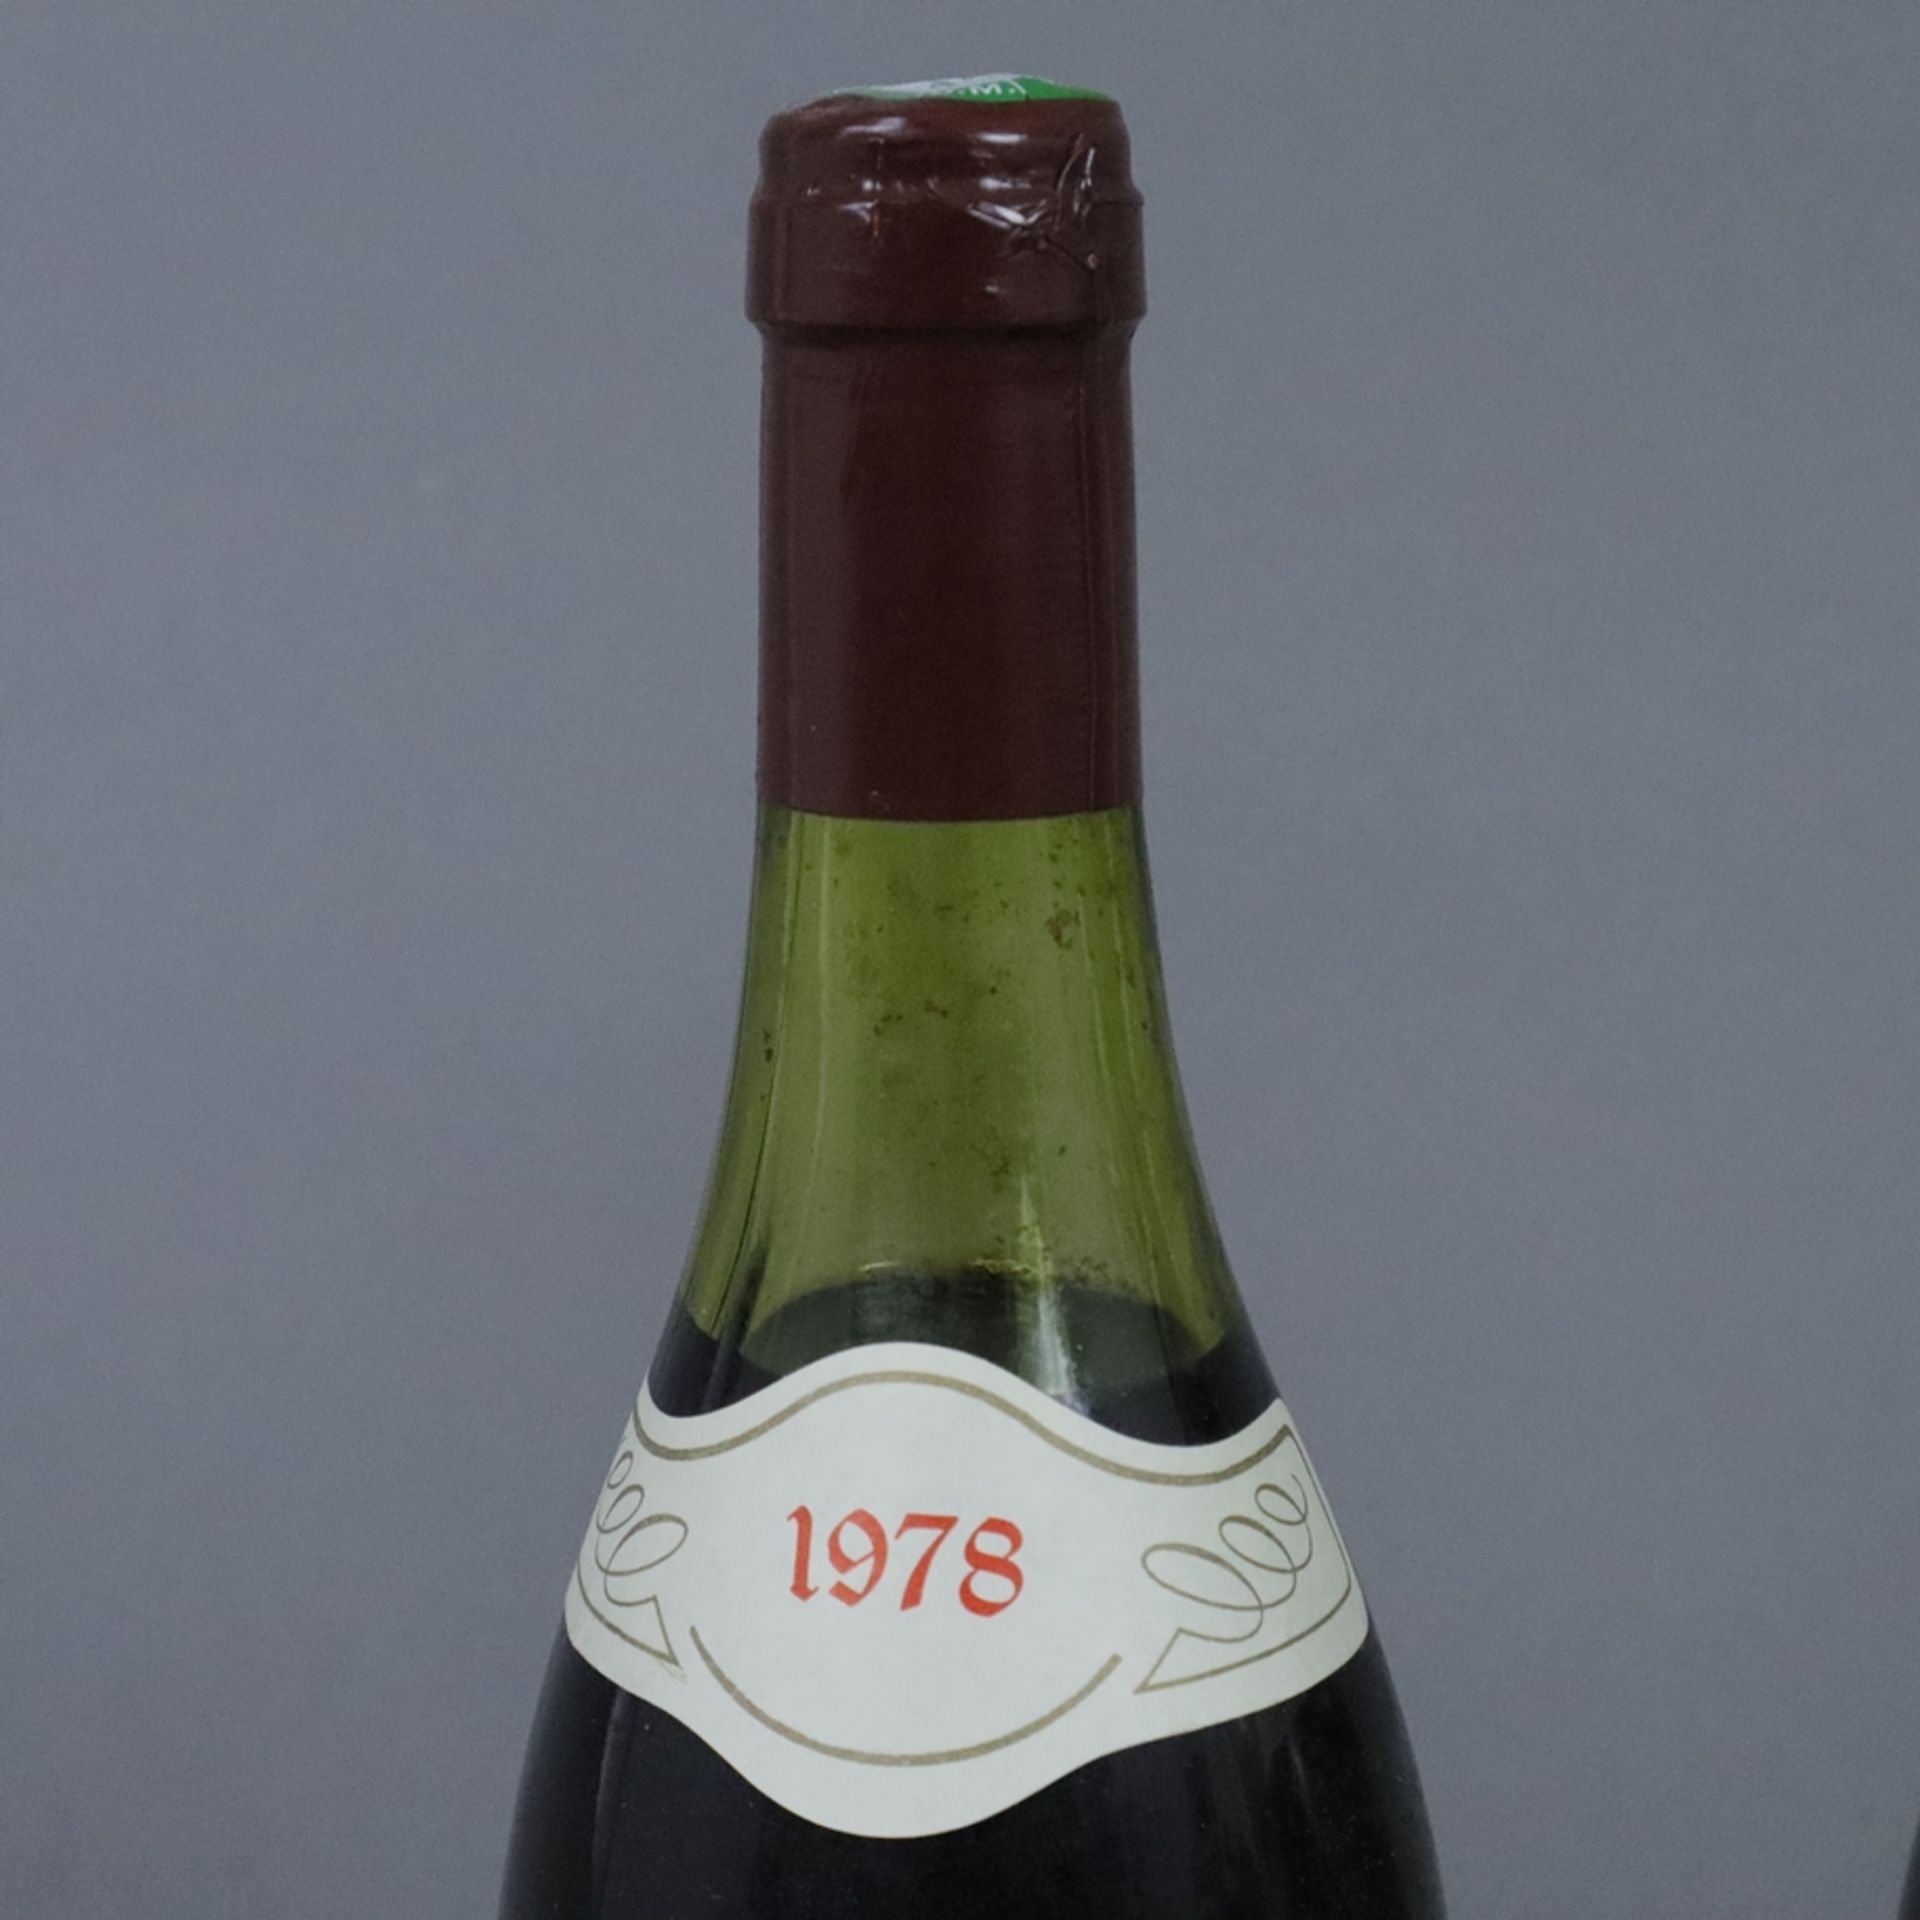 Weinkonvolut - 2 Flaschen 1978 + 2001, Domaine Valentin Bouchotte, Beaune 1er Cru, les Sizies, Fran - Bild 2 aus 7